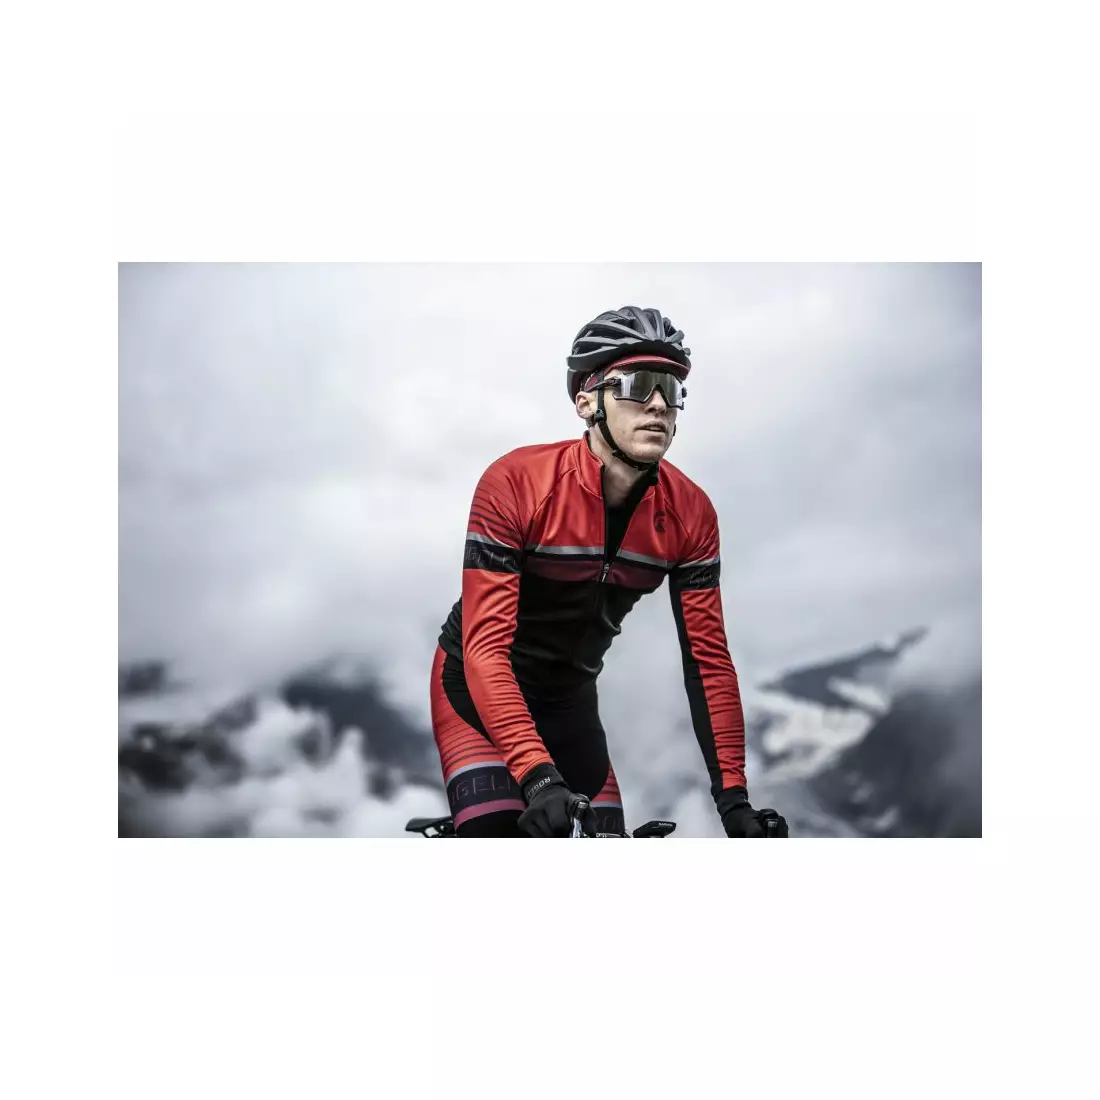 ROGELLI Férfi kerékpáros kabát HERO fekete és piros